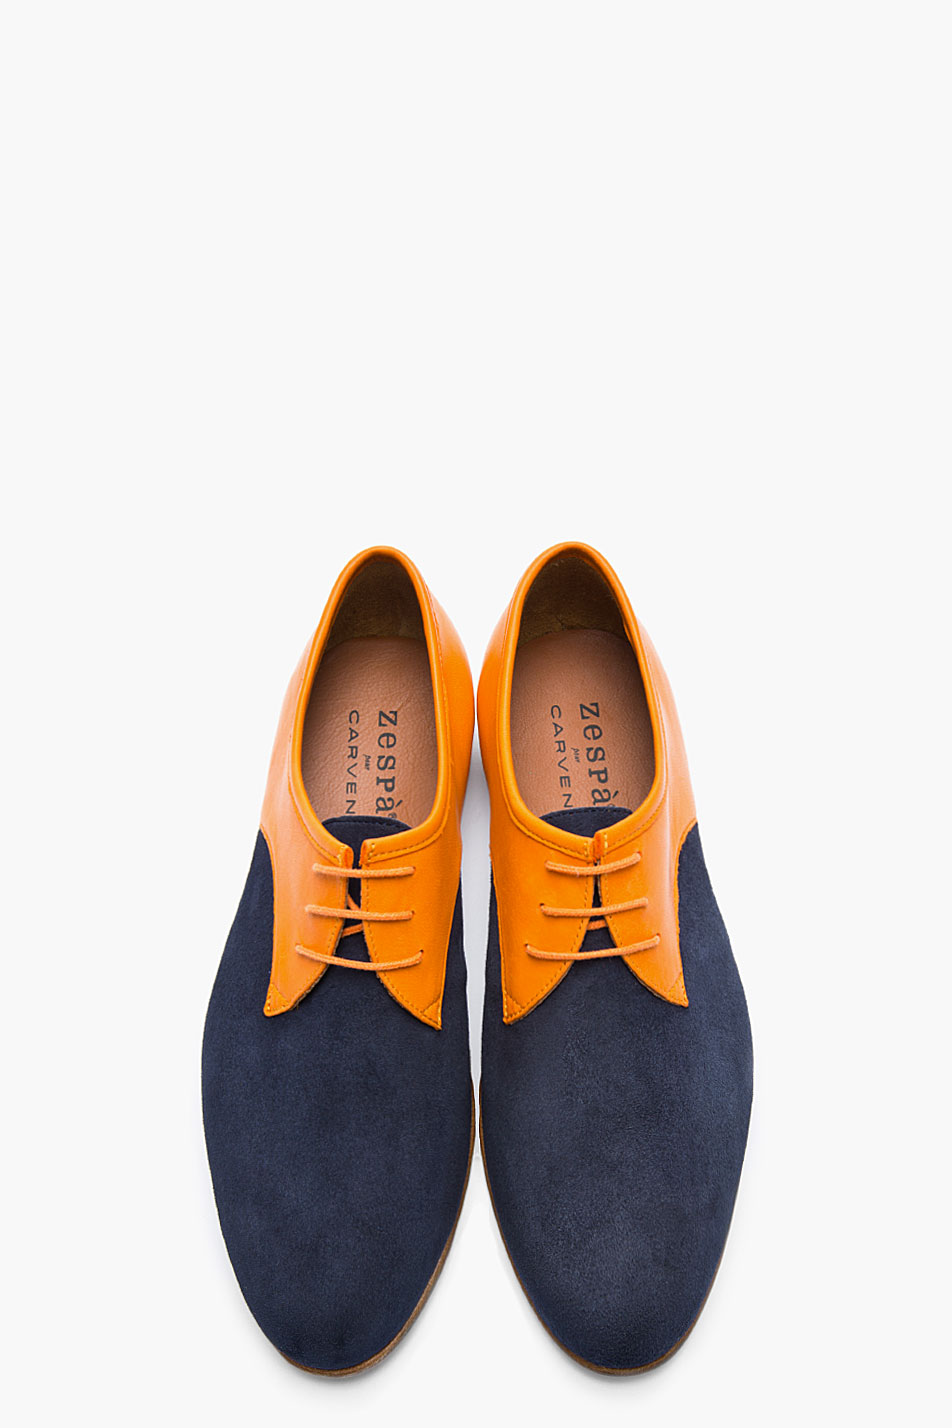 Carven x Zespà Orange & Navy Shoes 4